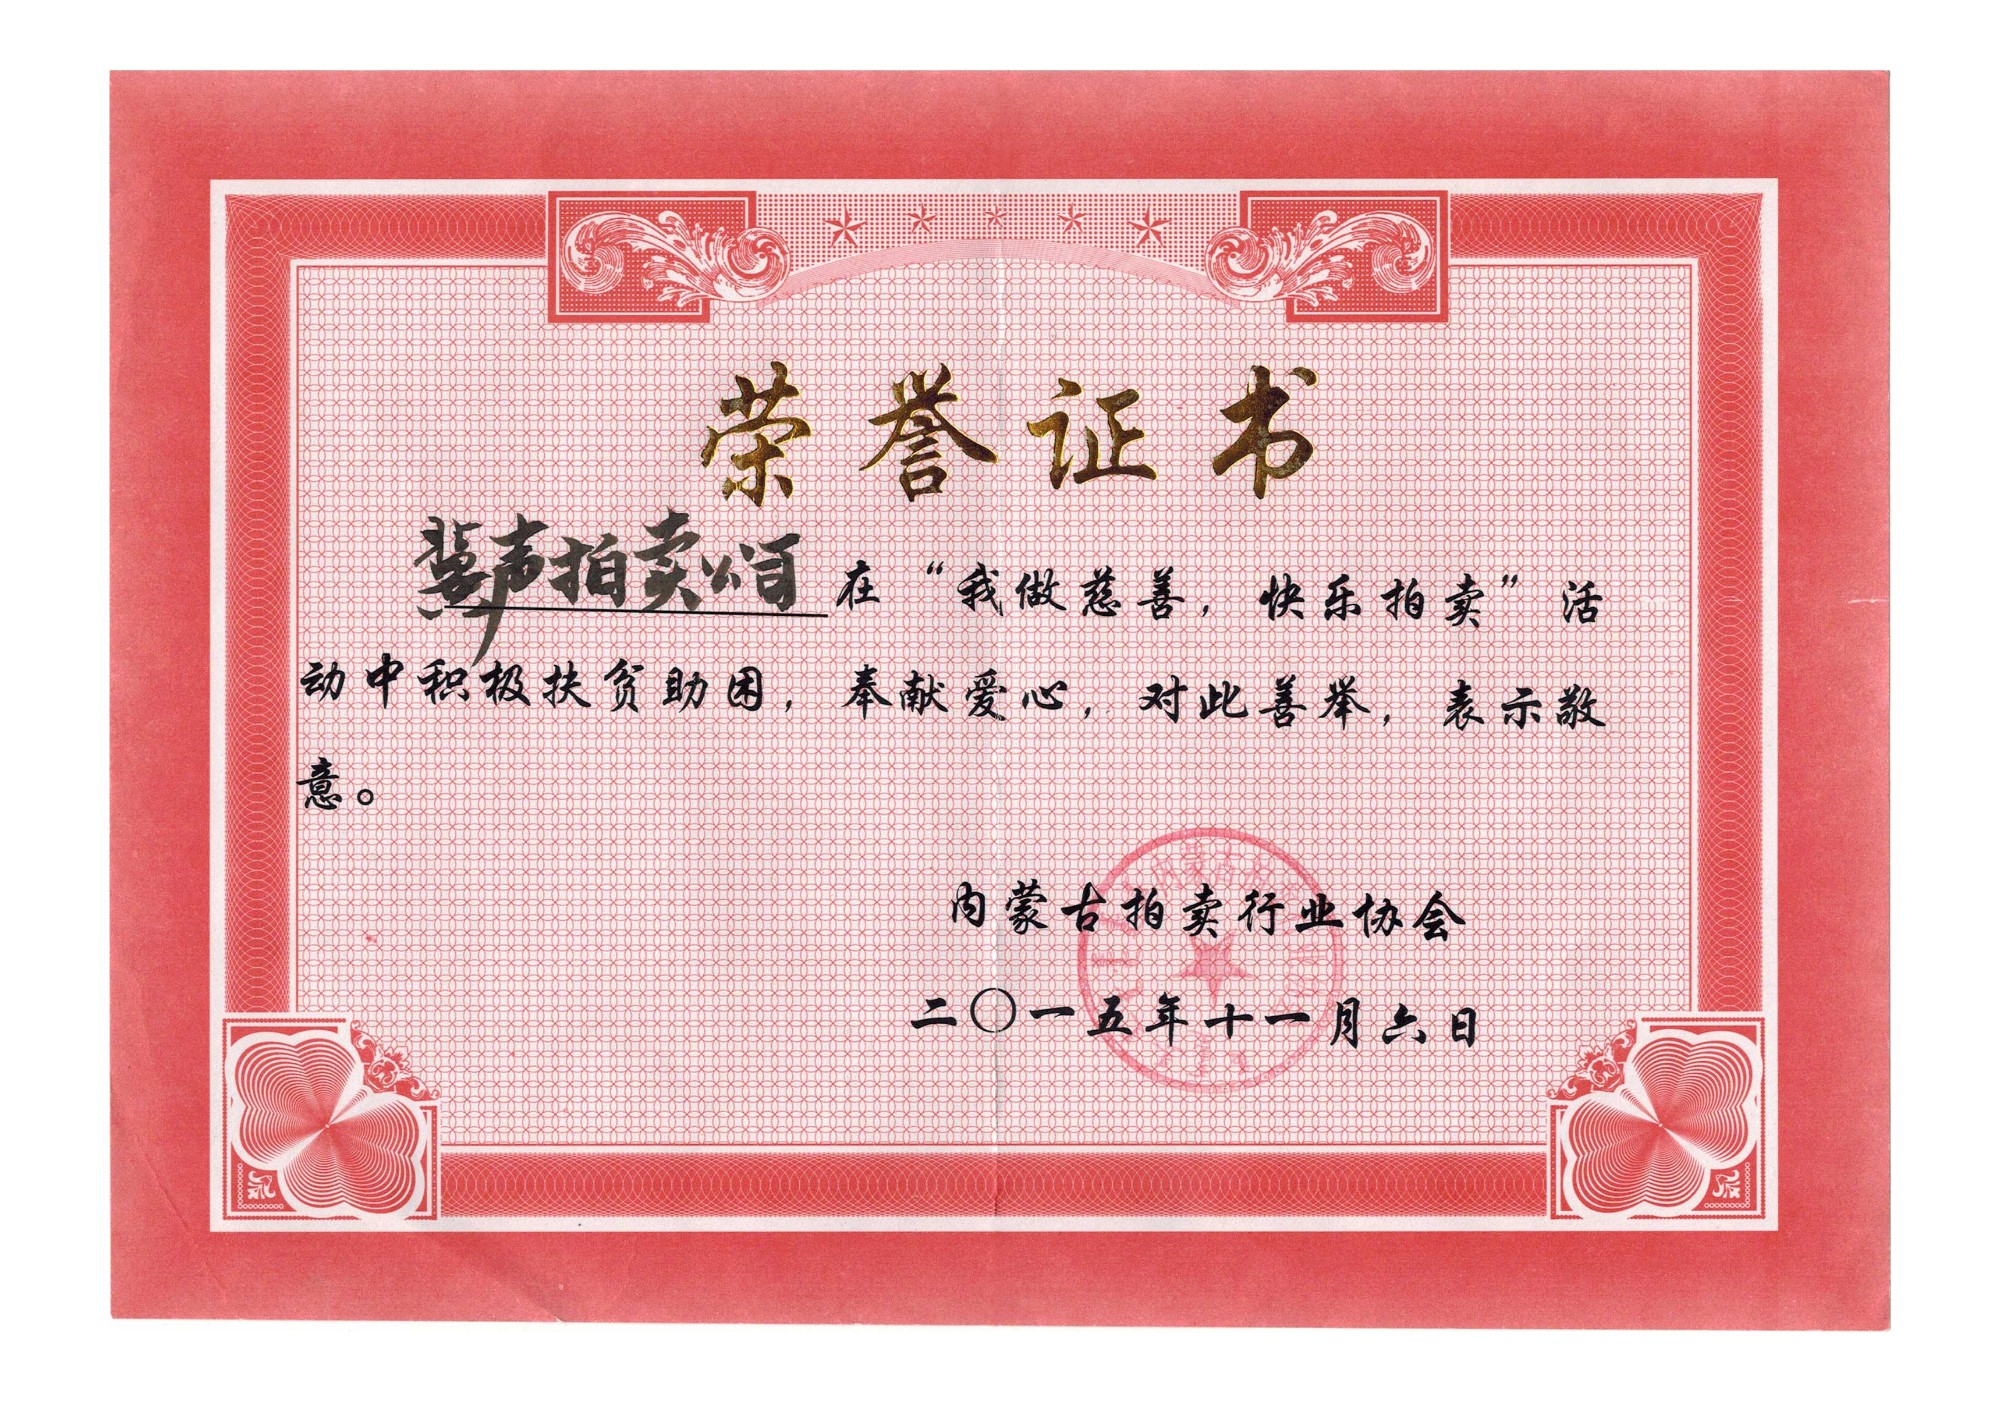 公司荣获红十字会颁发的荣誉证书